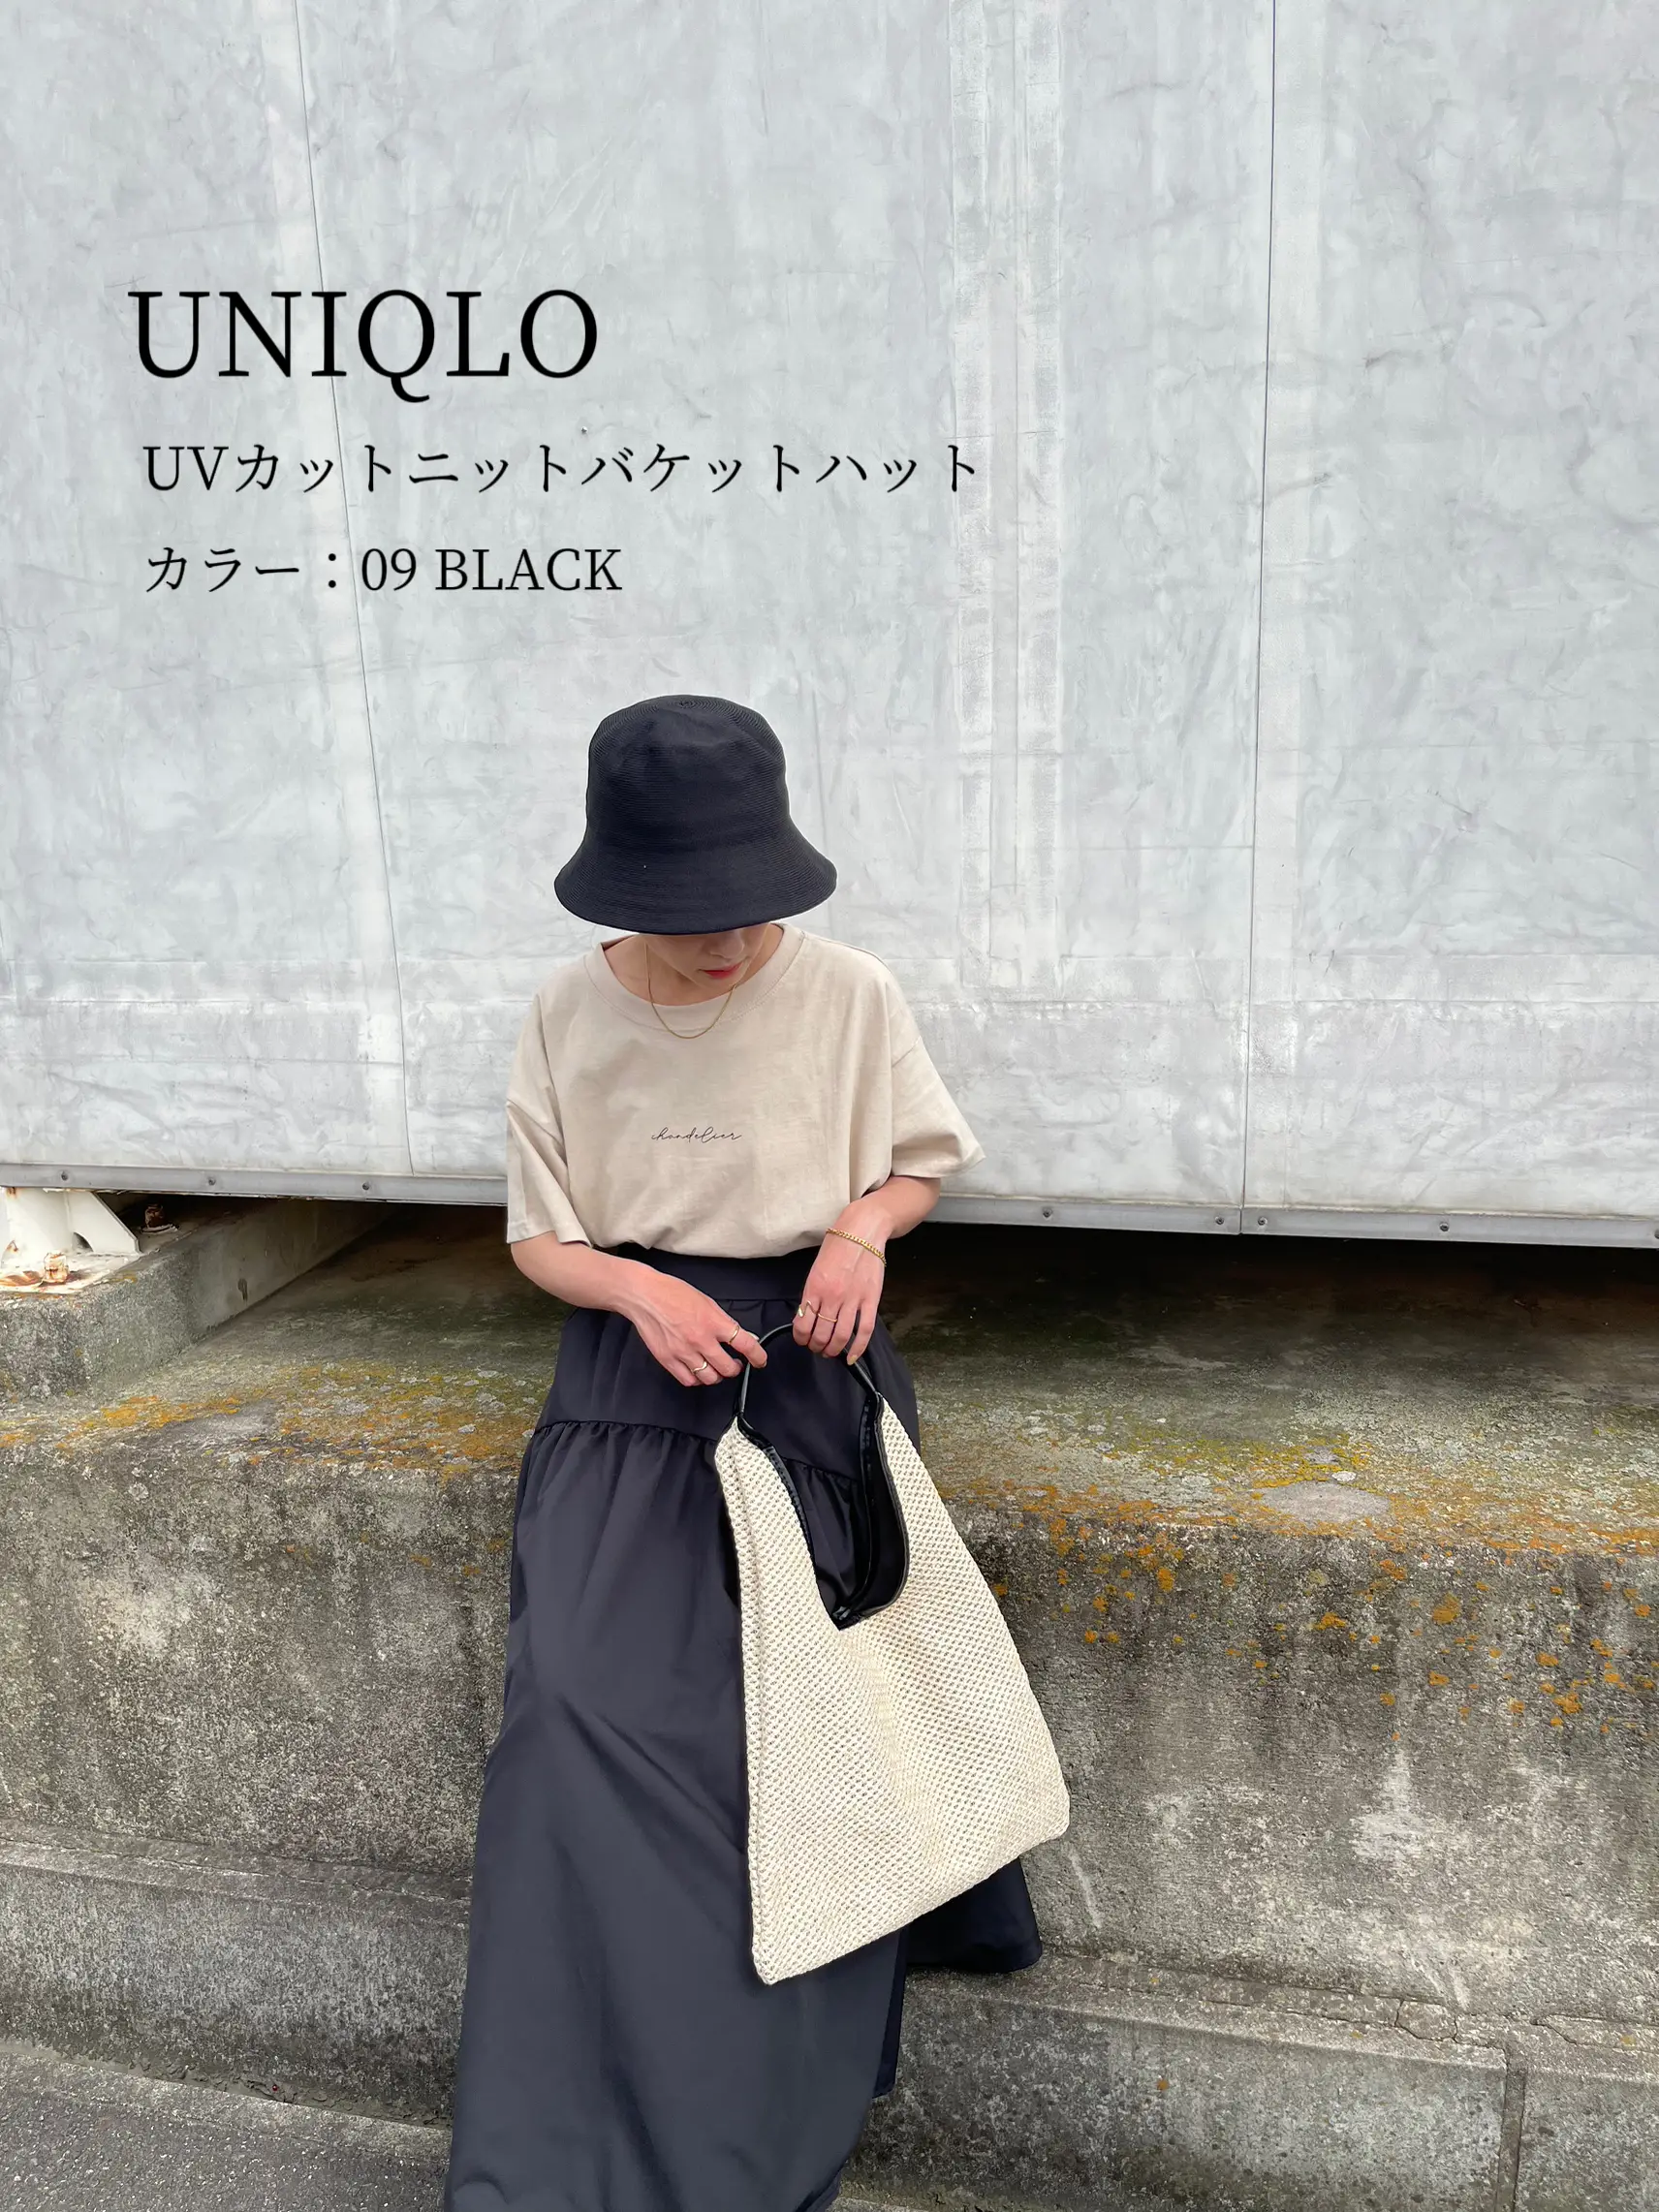 日本メーカー新品 UNIQLO 帽子 UVカットニットバケットハット ブラック